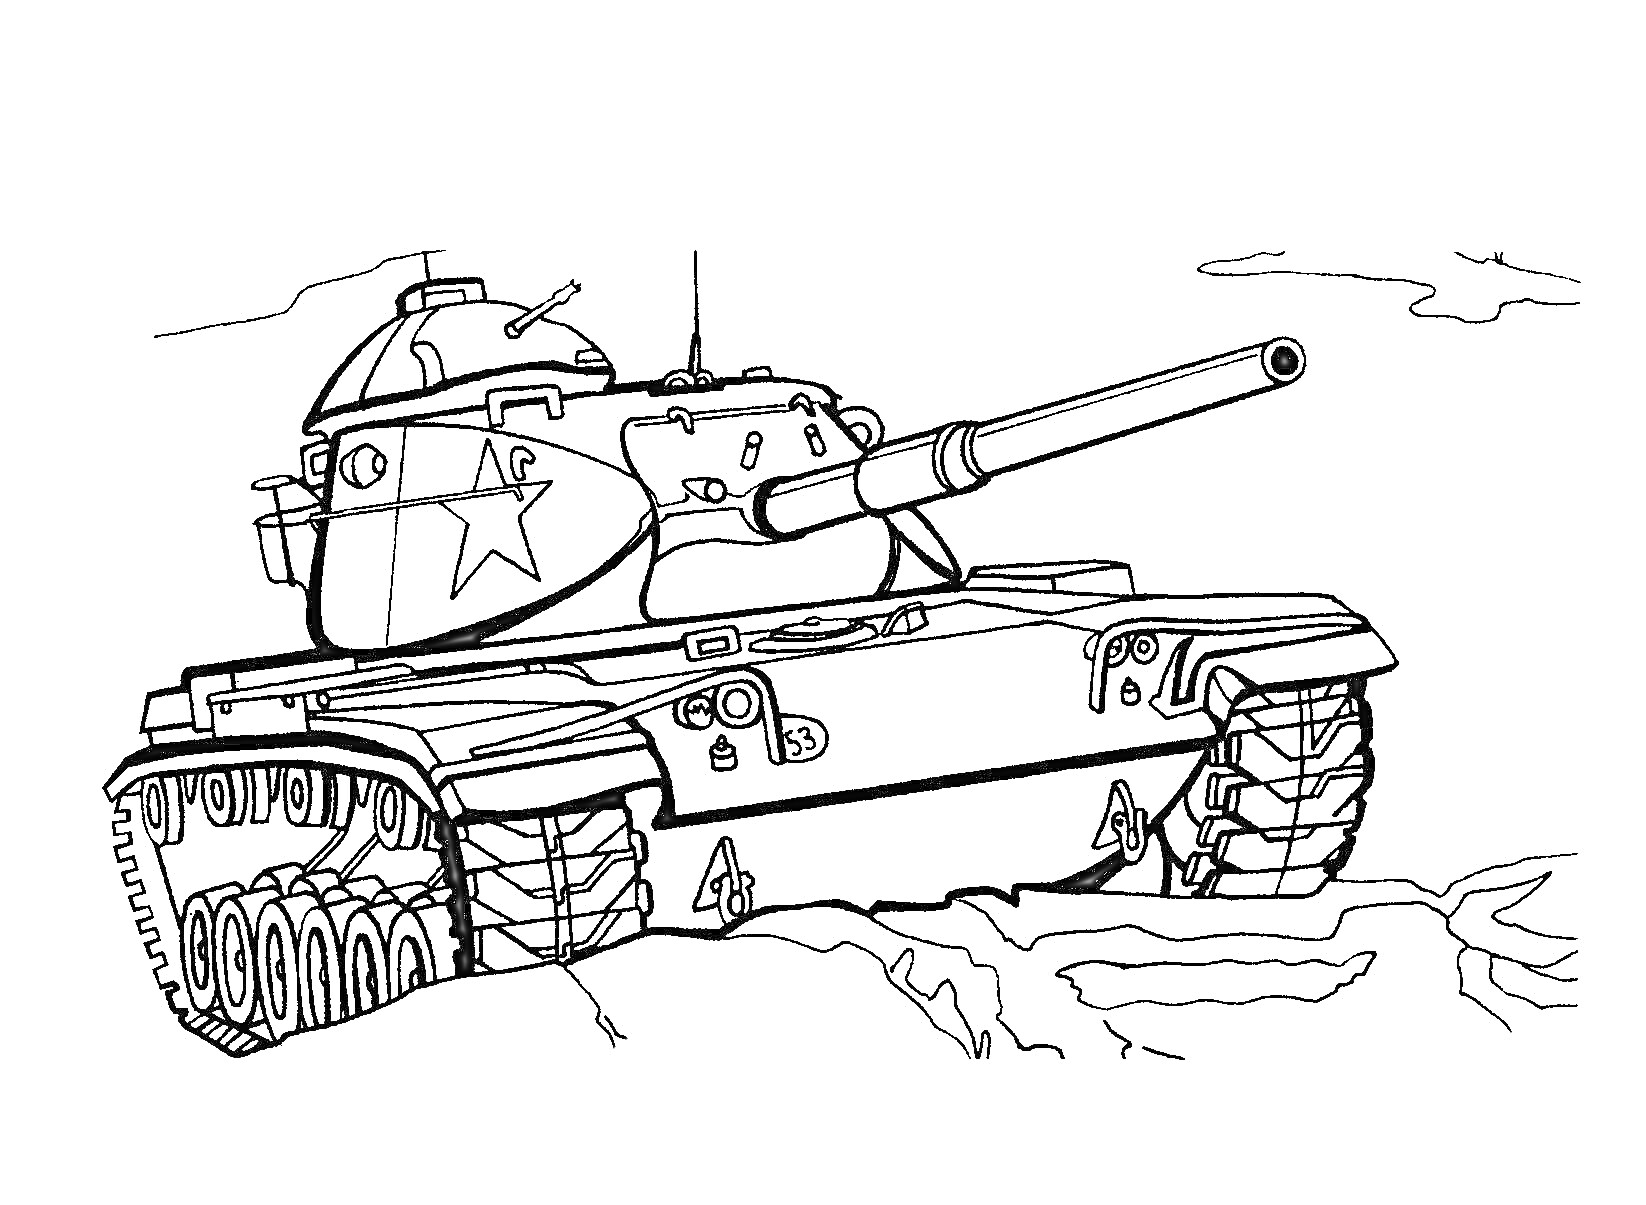 Танковый бой, на переднем плане танк с крупной пушкой, гусеницами и звездами на корпусе, на фоне облака и поле битвы